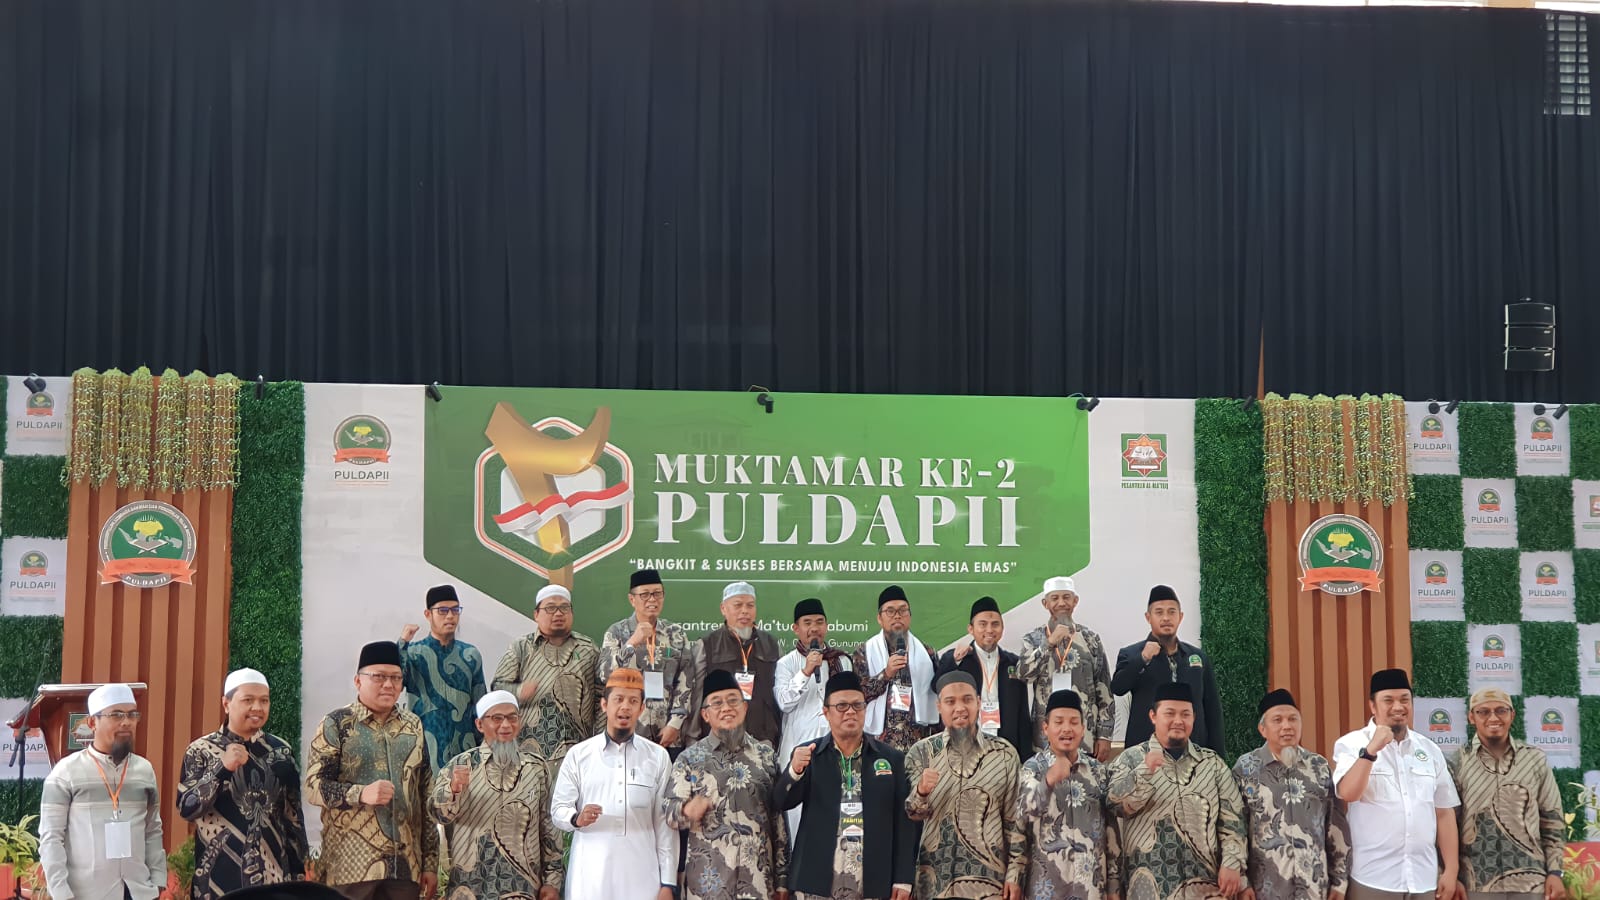 PULDAPII Sukses Selenggarakan Gelaran Muktamar ke-2 di Sukabumi.